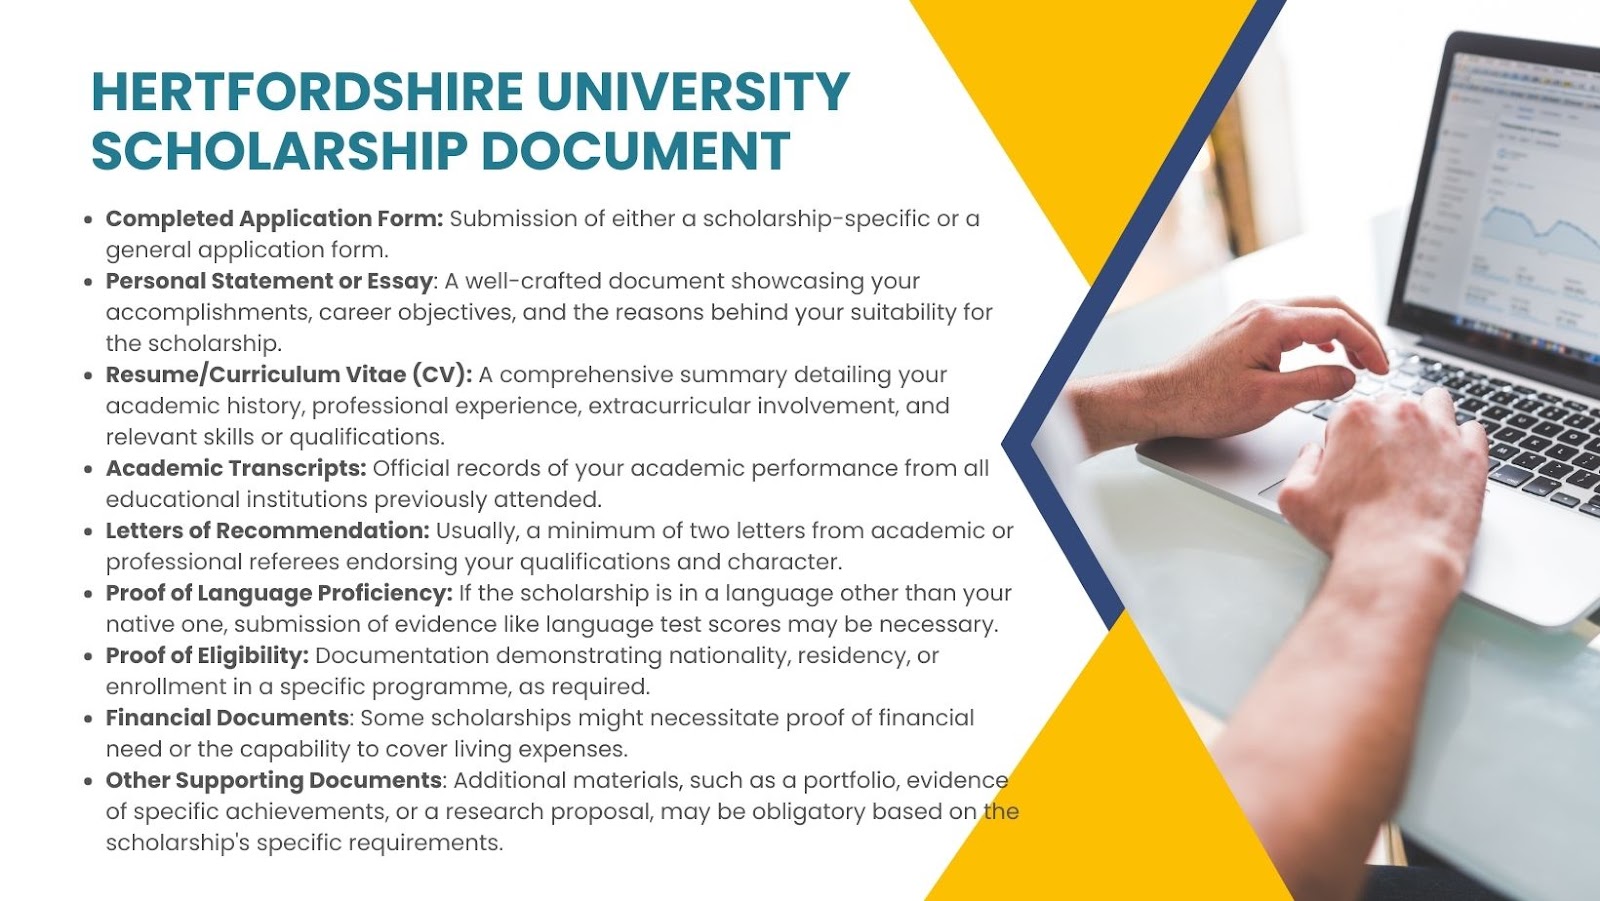 Hertfordshire University scholarship document. 